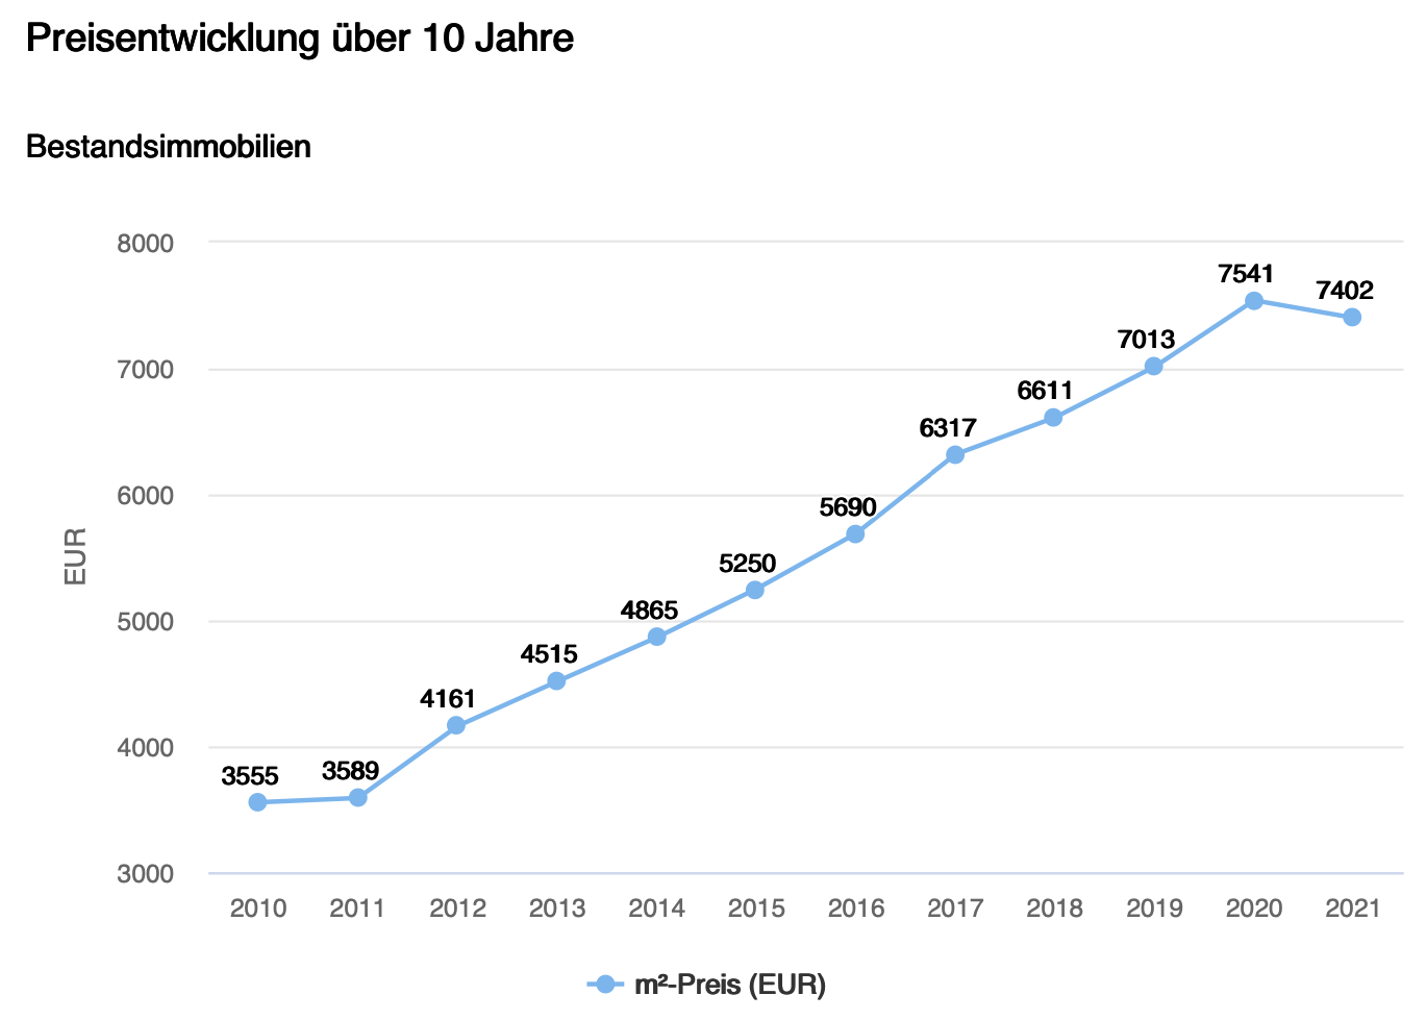 Bestandsimmobilien Preisentwicklung über 10 Jahre Landkreis Starnberg